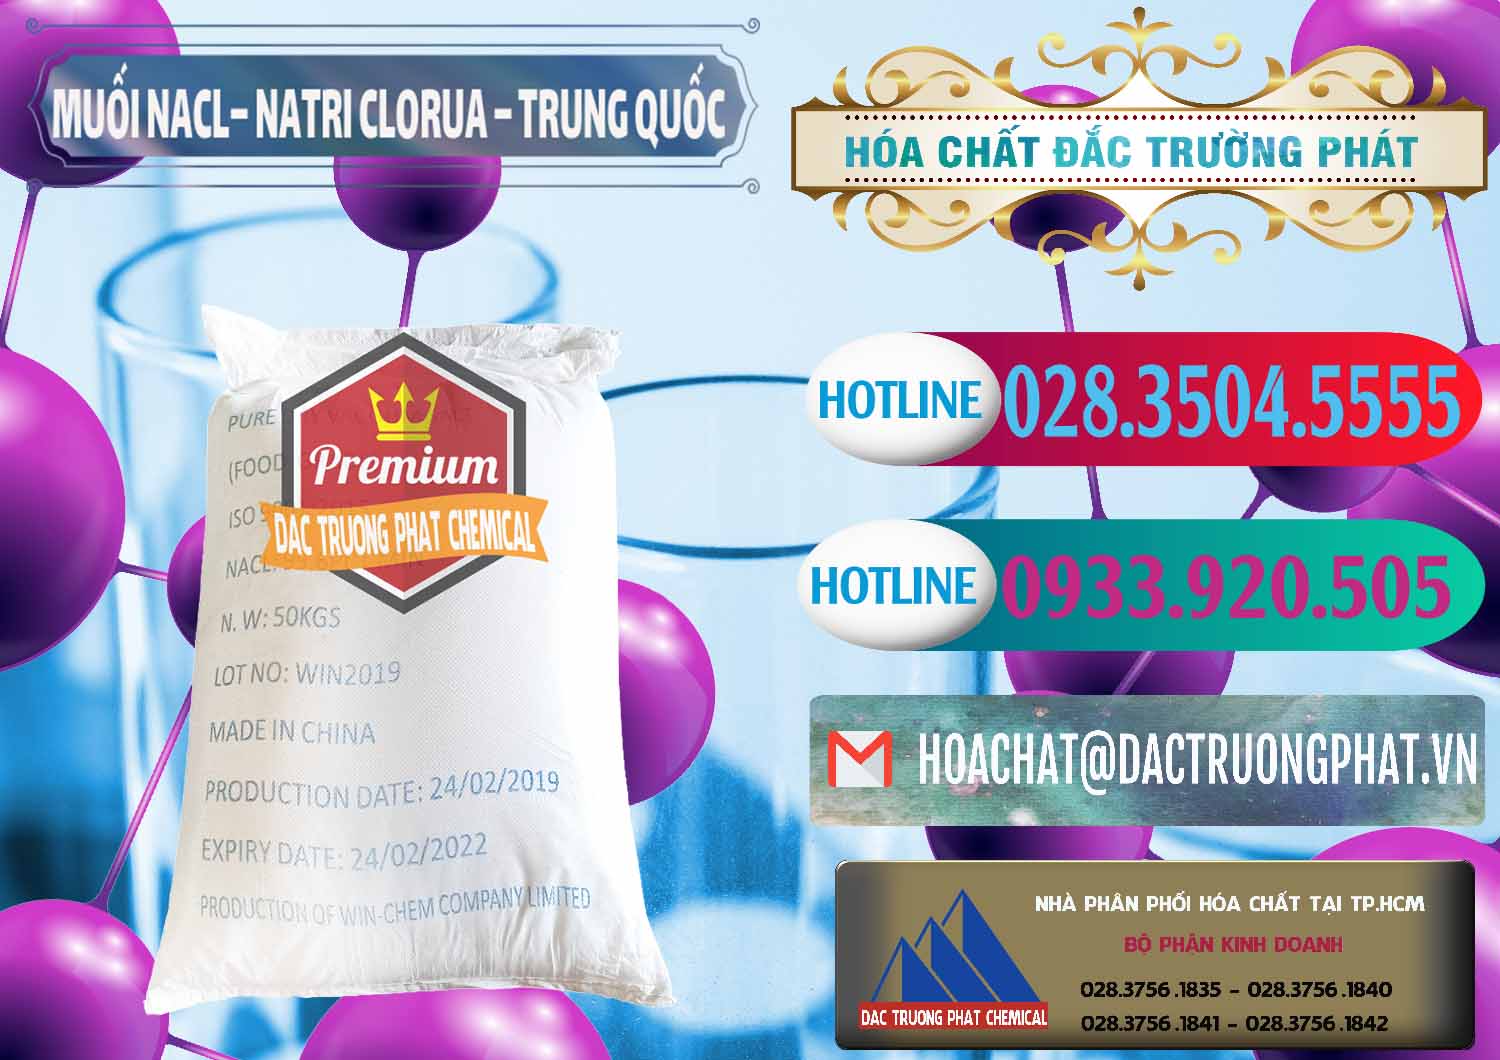 Công ty chuyên kinh doanh - bán Muối NaCL – Sodium Chloride Trung Quốc China - 0097 - Đơn vị phân phối và bán hóa chất tại TP.HCM - truongphat.vn